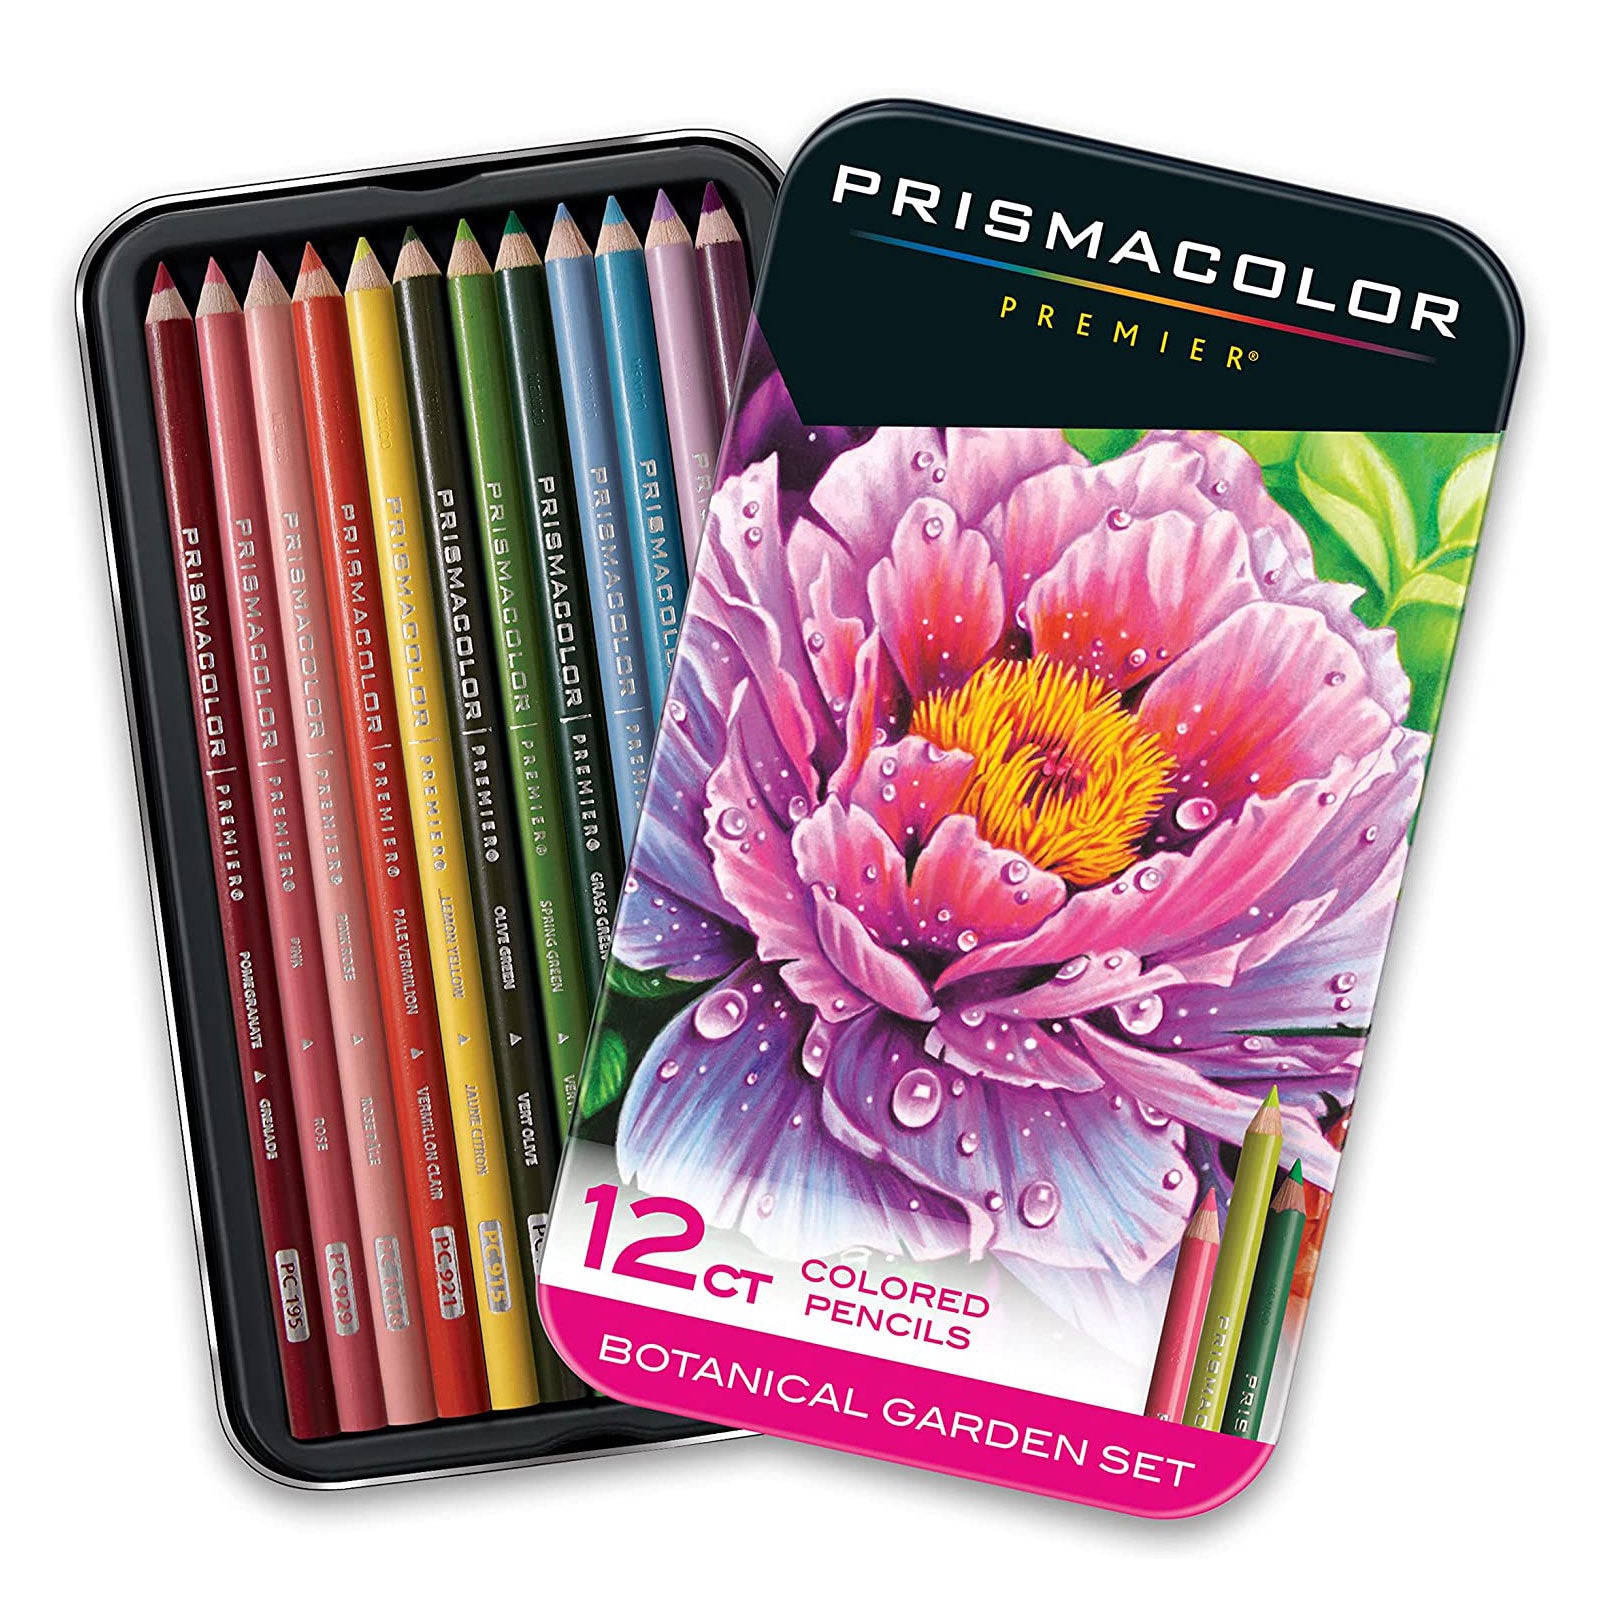 Prismacolor Premier Colored Pencils- 12 set, Botanical